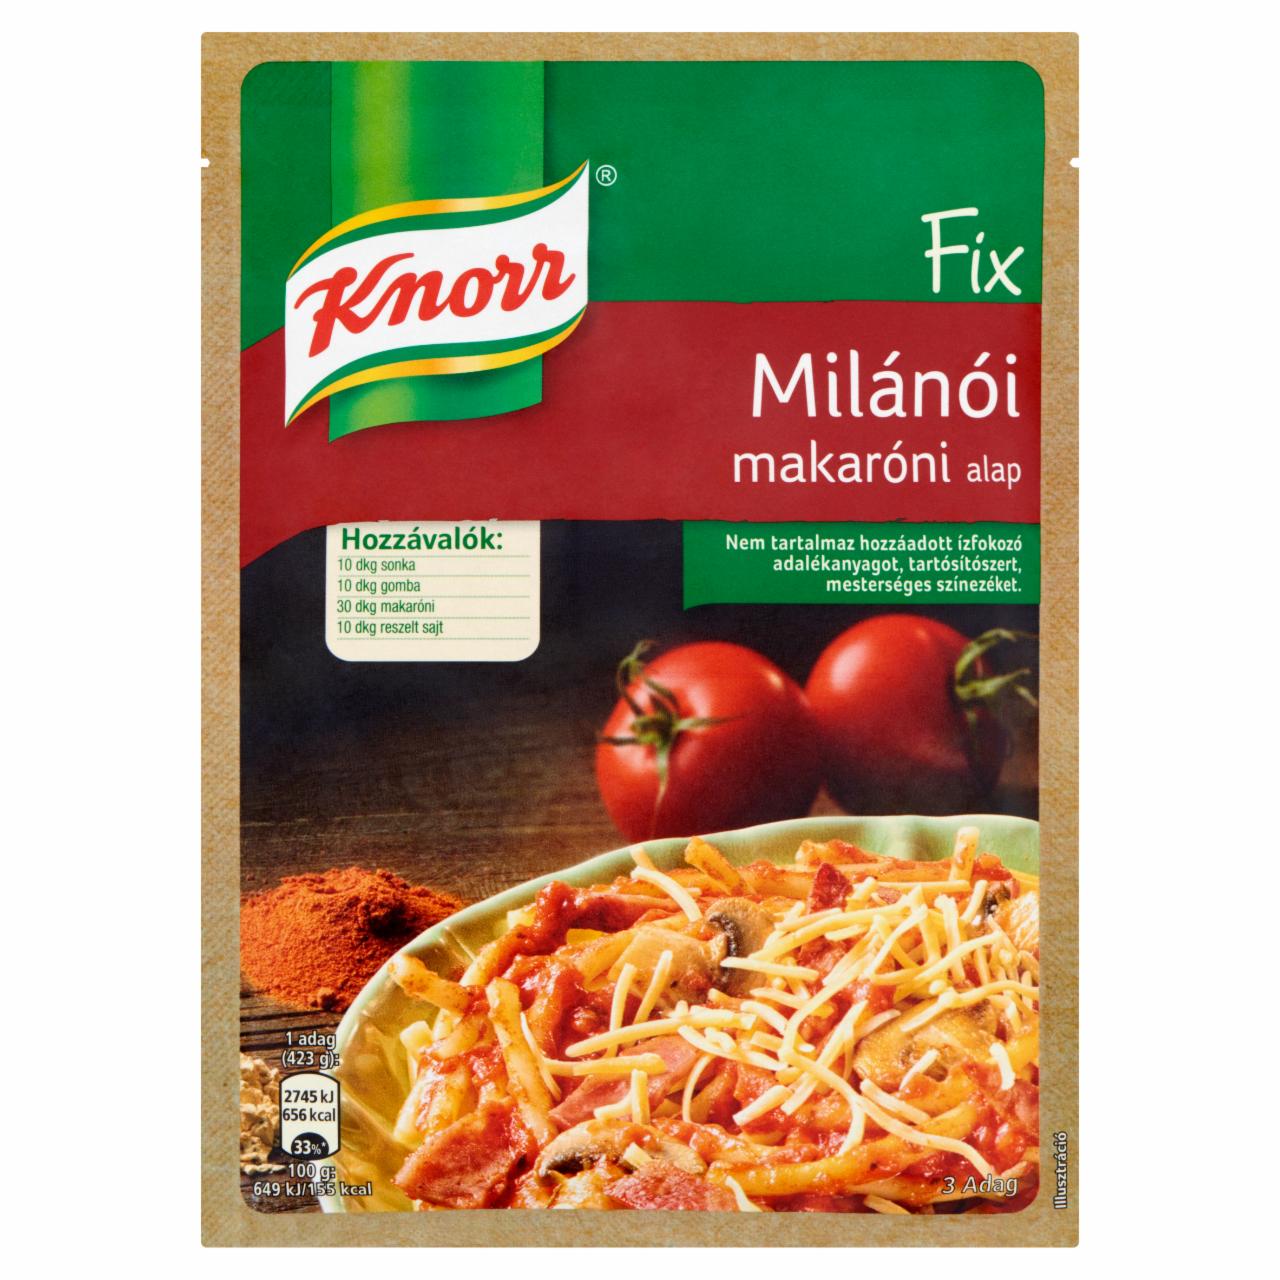 Képek - Fix milánói makaróni alap Knorr